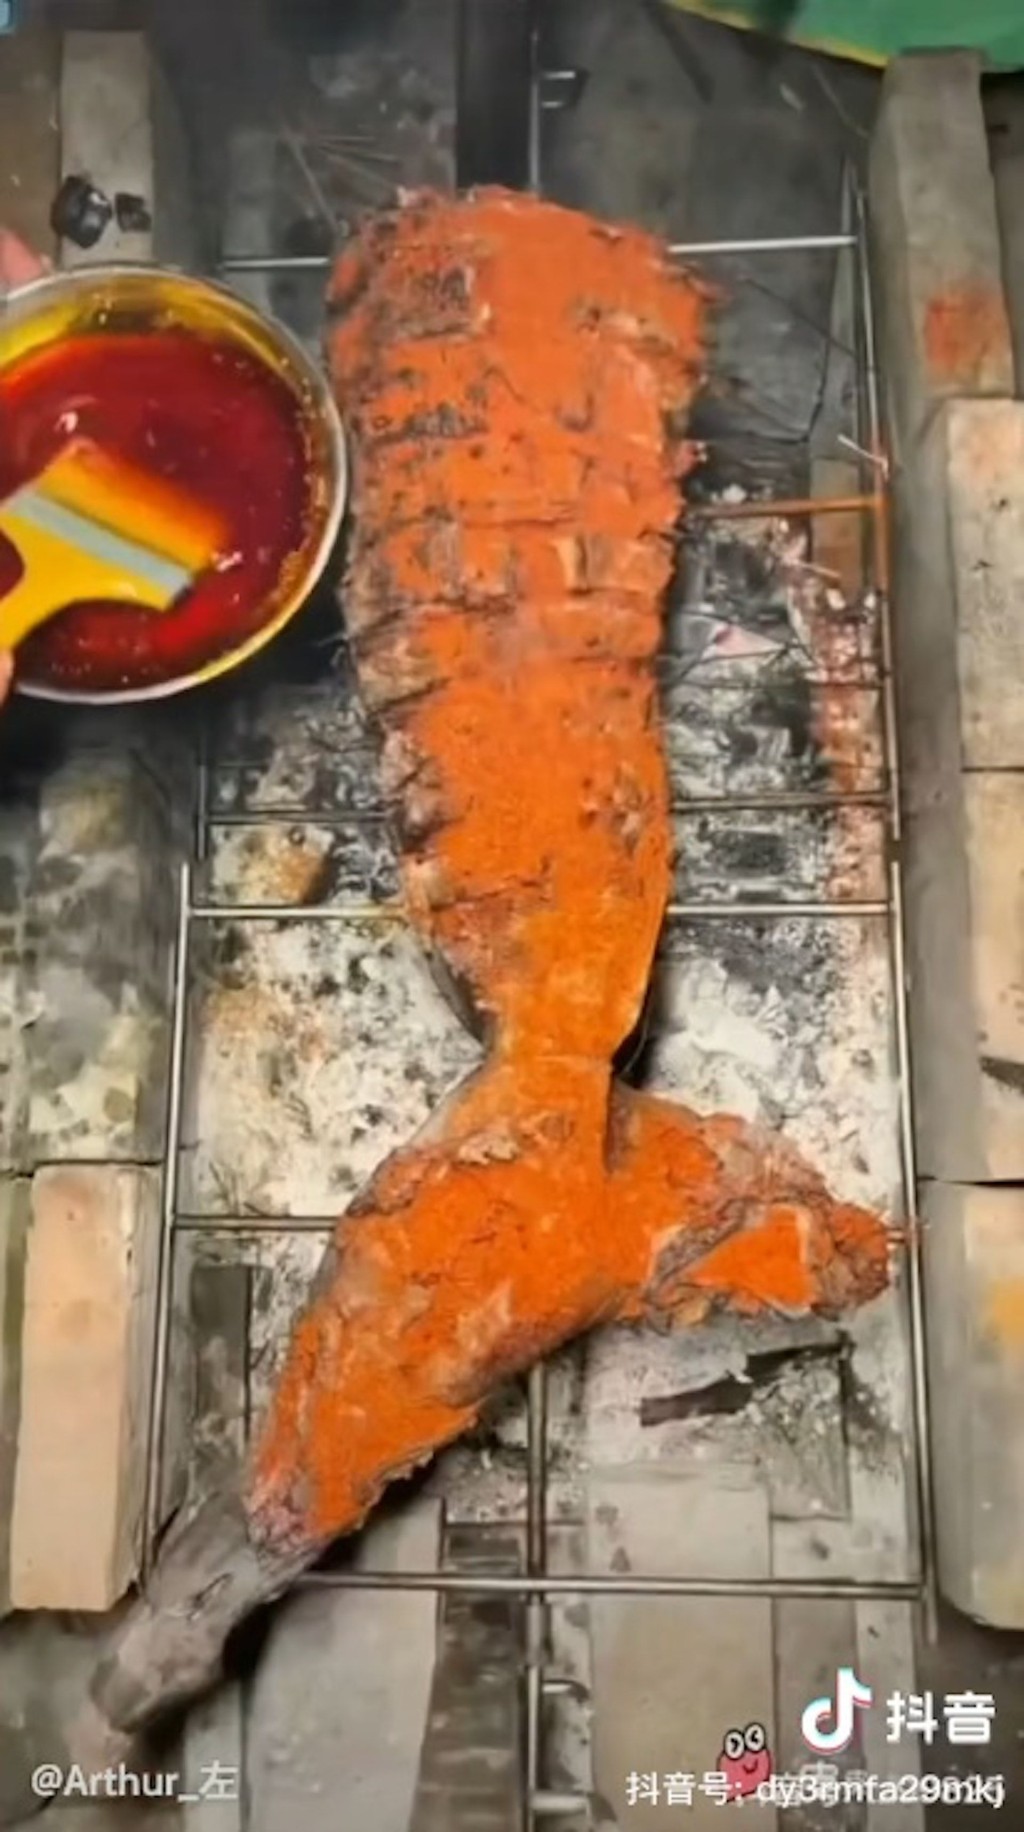 鯊魚尾部用來燒烤，魚體上灑滿了紅色調料。